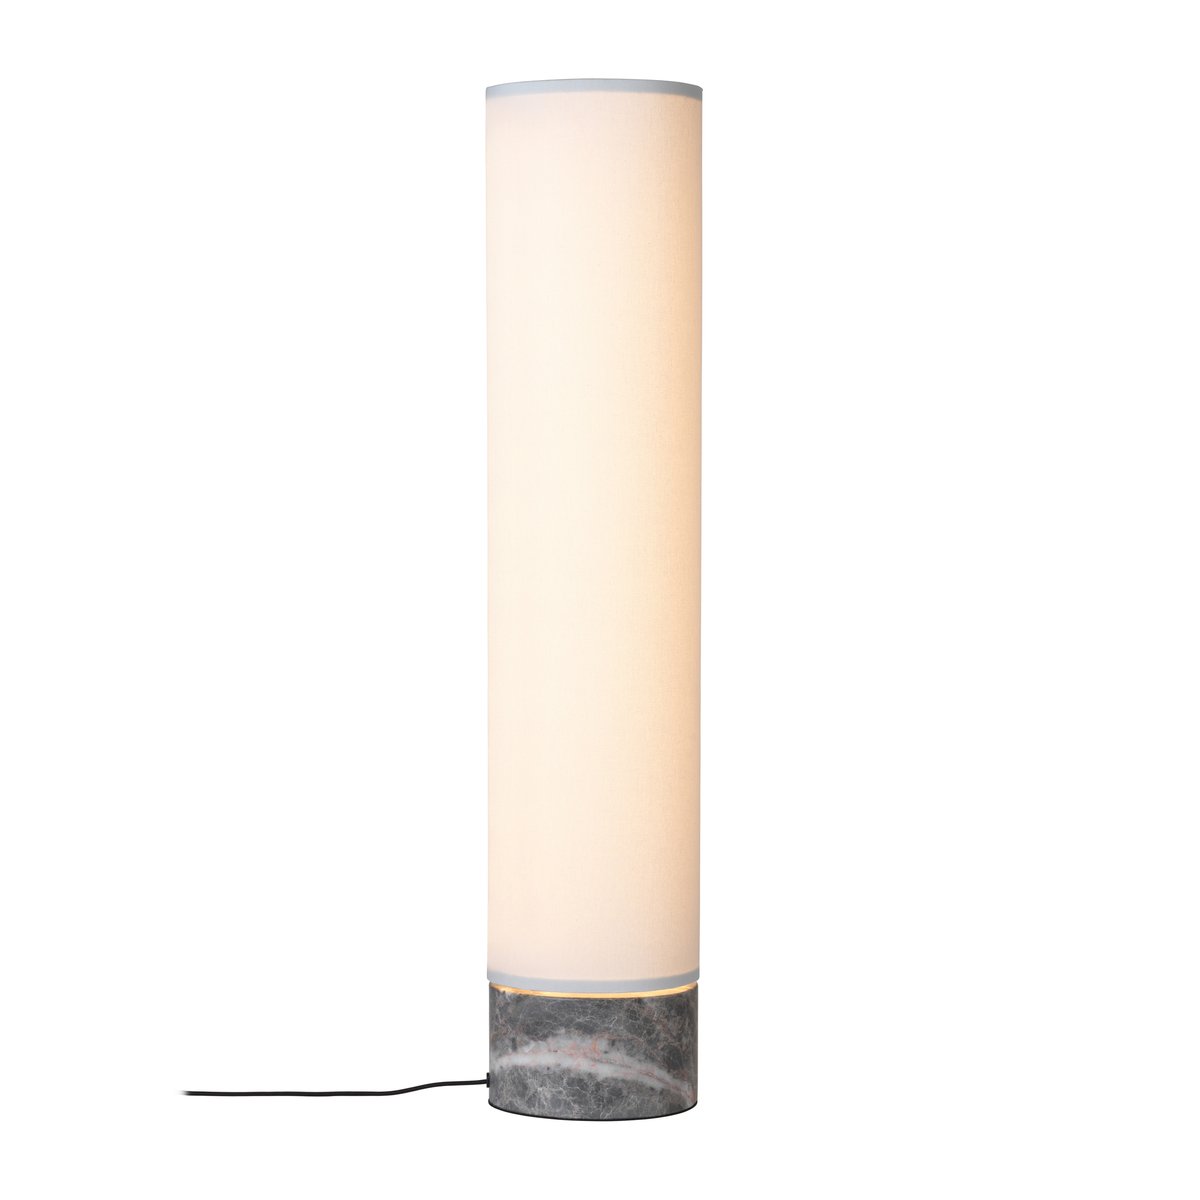 9: Gubi Unbound gulvlampe 80 cm Hvid-grå marmor